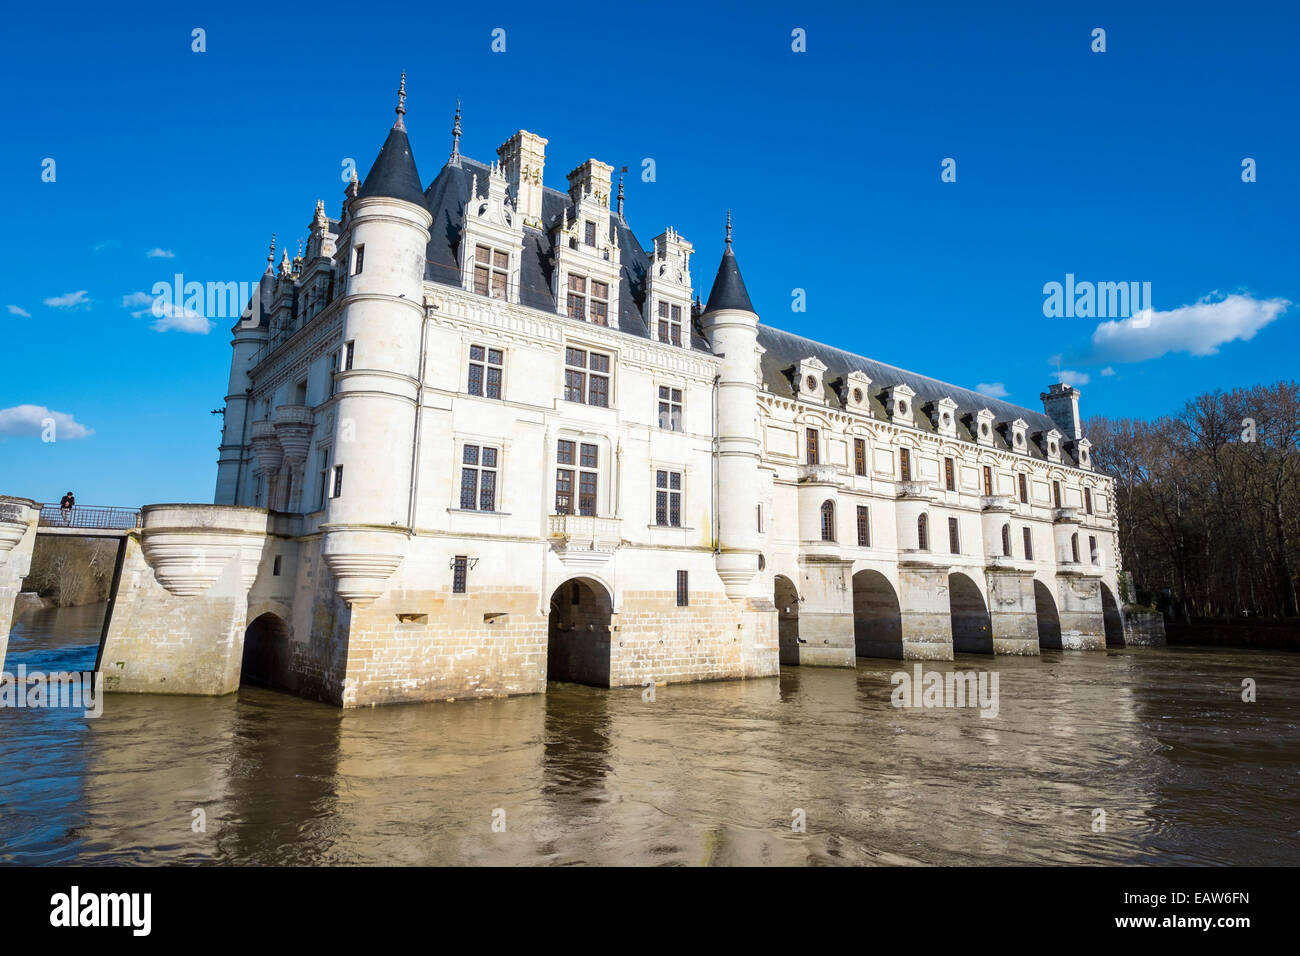 Chateau de Chenonceau castle over the Cher River, Chenonceaux, Indre-et-Loire, Centre, France Stock Photo